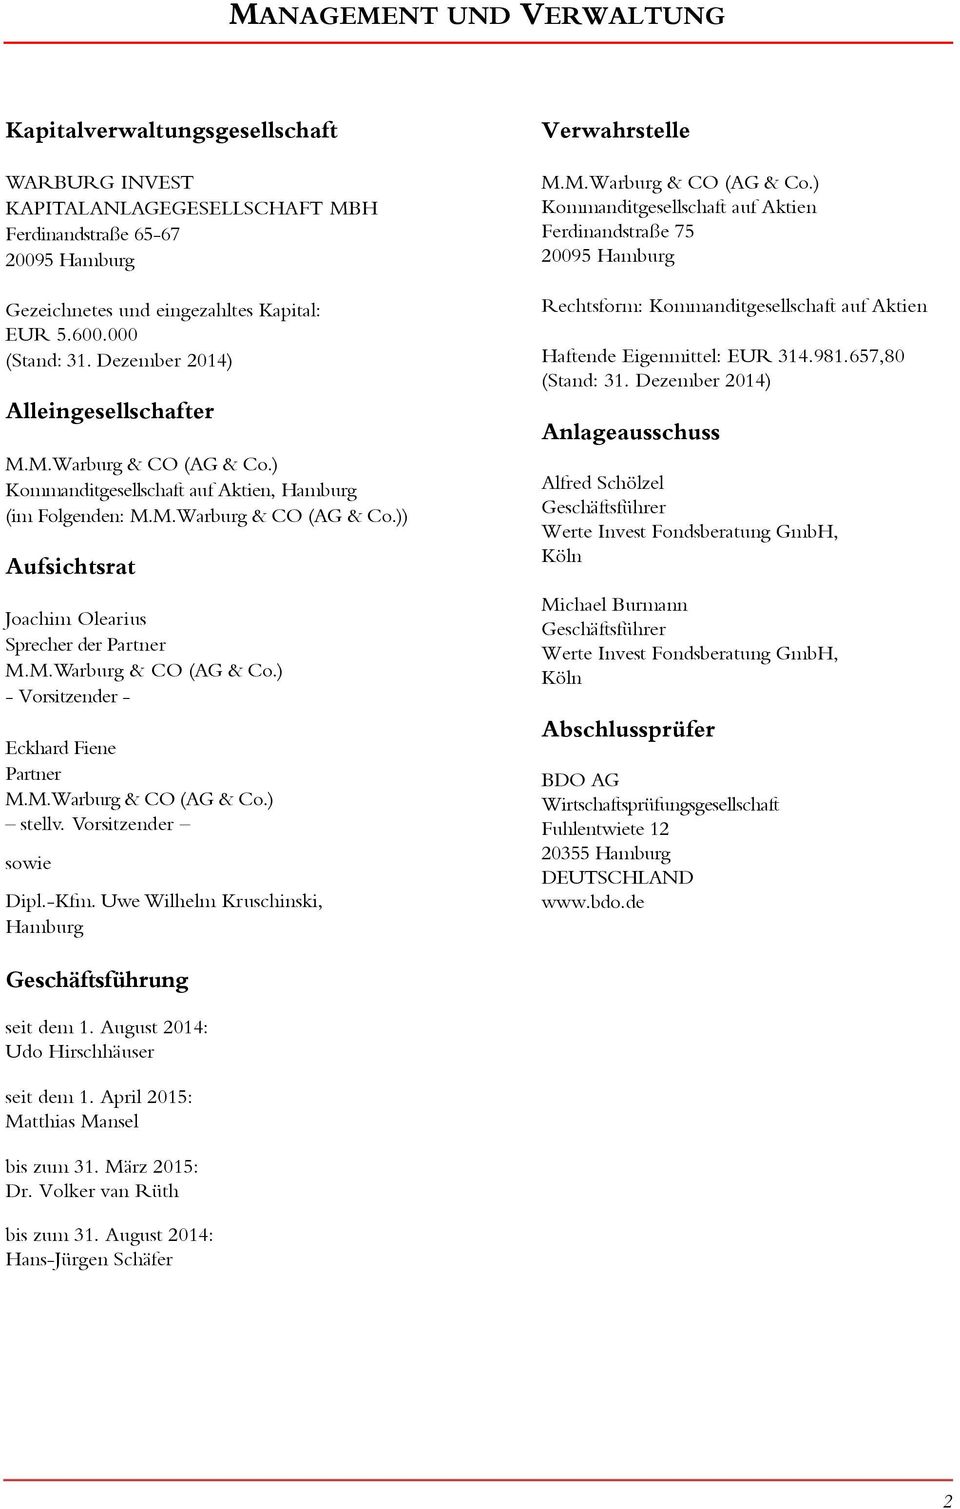 M.Warburg & CO (AG & Co.) - Vorsitzender - Eckhard Fiene Partner M.M.Warburg & CO (AG & Co.) stellv. Vorsitzender sowie Dipl.-Kfm. Uwe Wilhelm Kruschinski, Hamburg Verwahrstelle M.M.Warburg & CO (AG & Co.) Kommanditgesellschaft auf Aktien Ferdinandstraße 75 20095 Hamburg Rechtsform: Kommanditgesellschaft auf Aktien Haftende Eigenmittel: EUR 314.